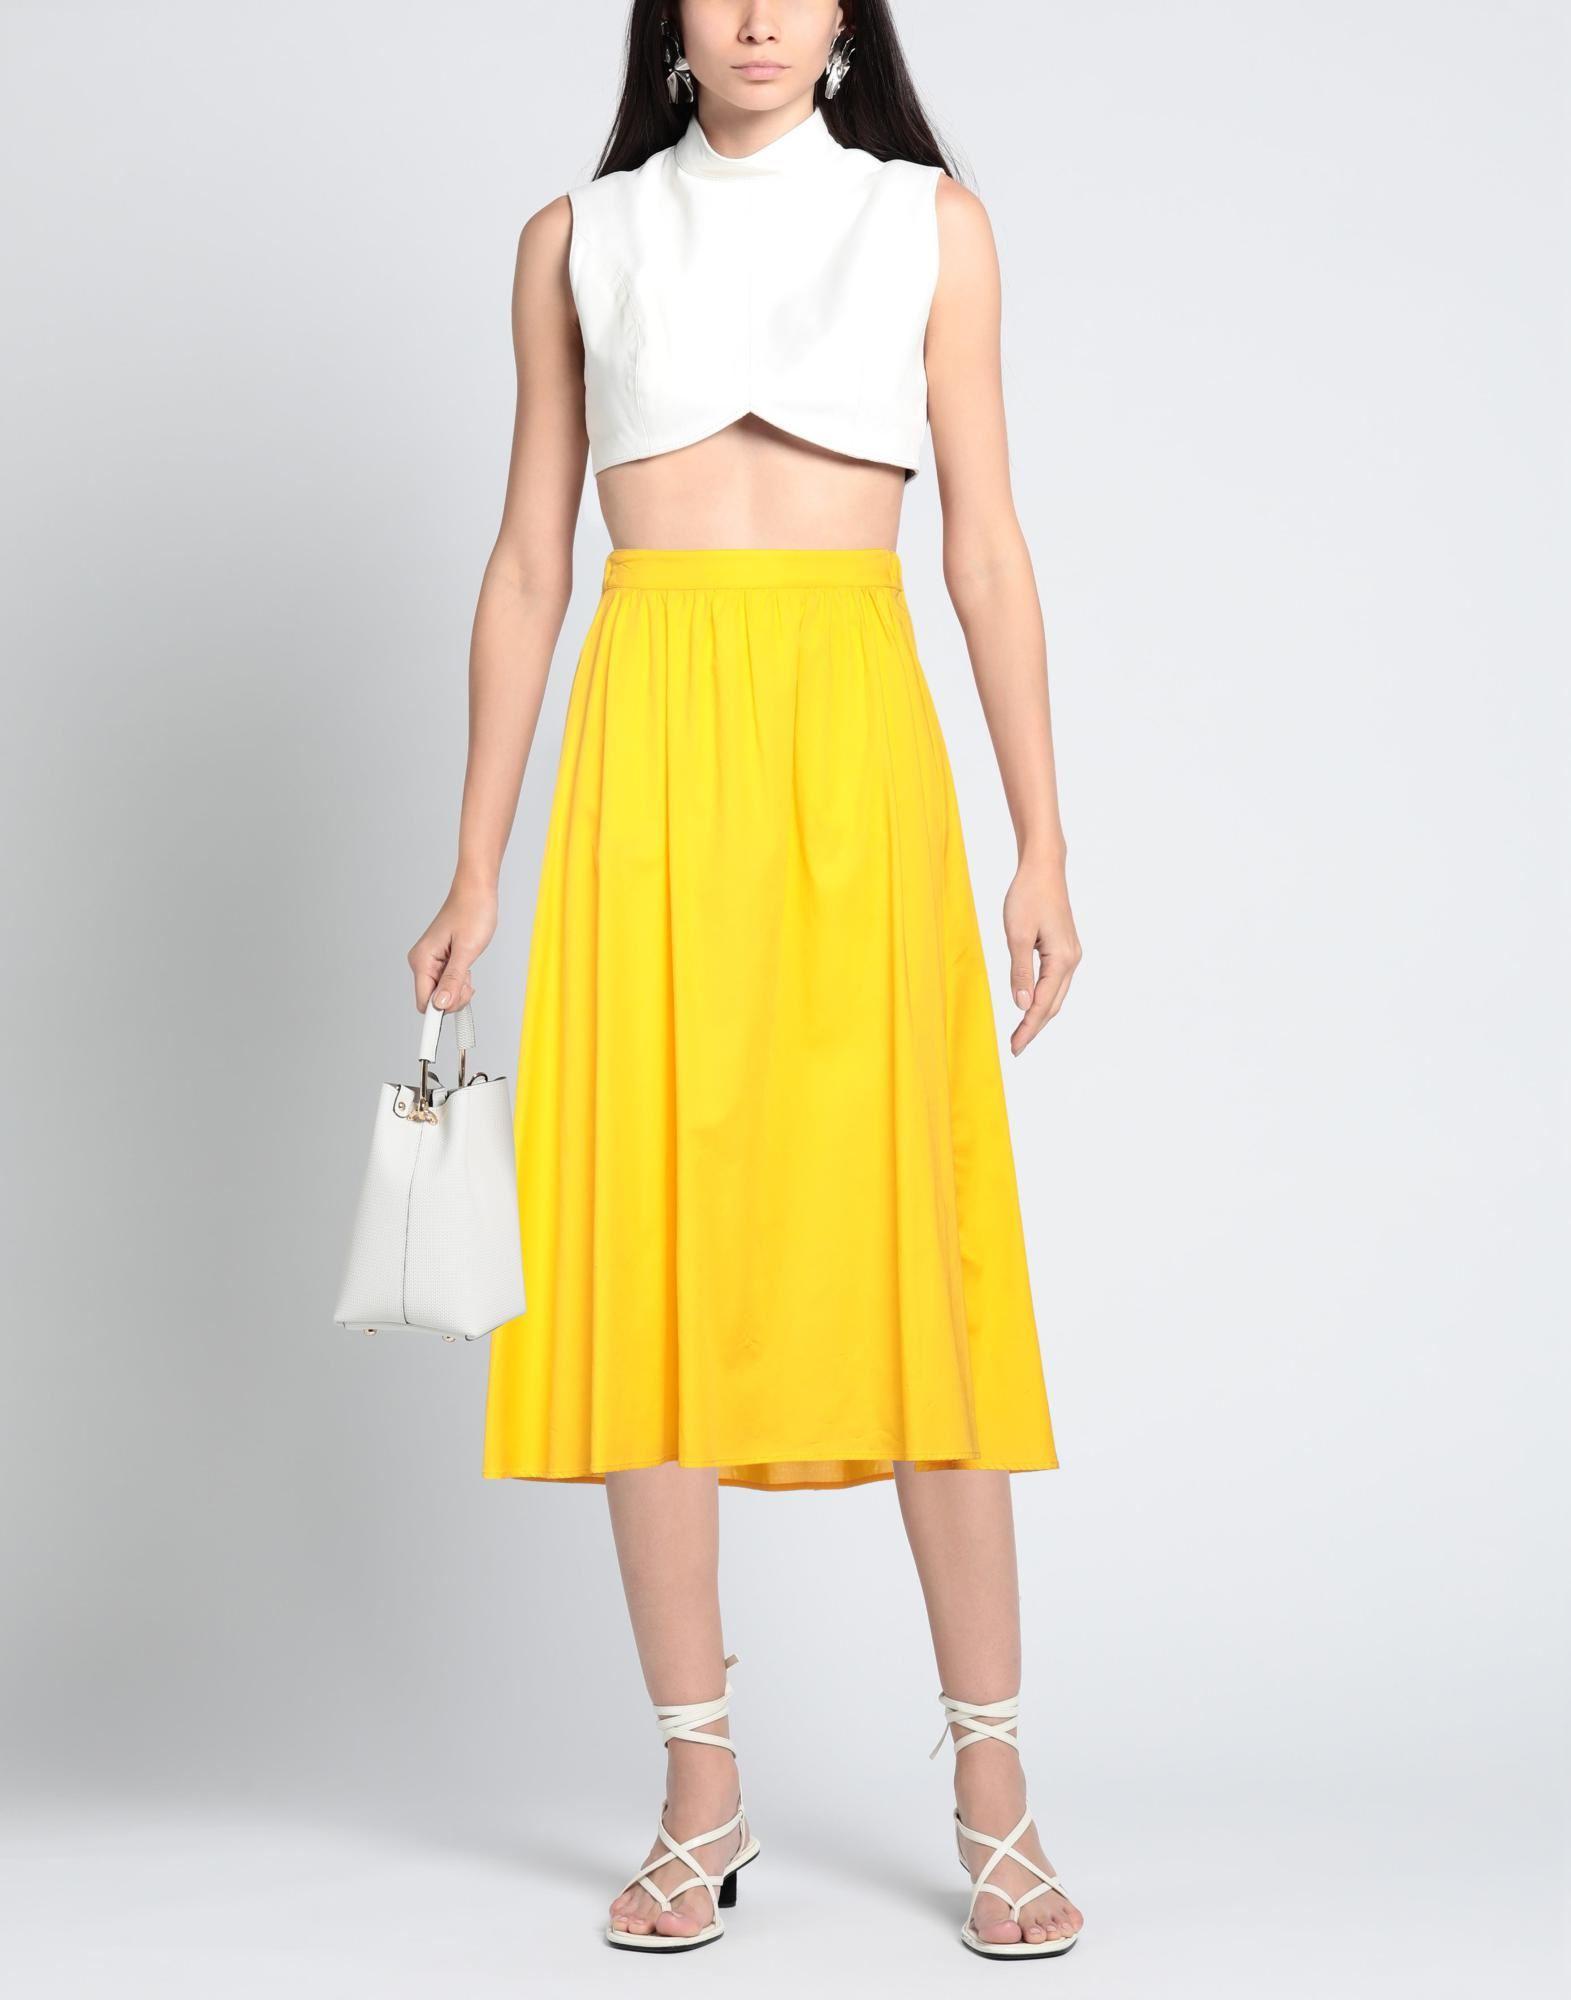 BLUMARINE | Light yellow Women's Midi Skirt | YOOX